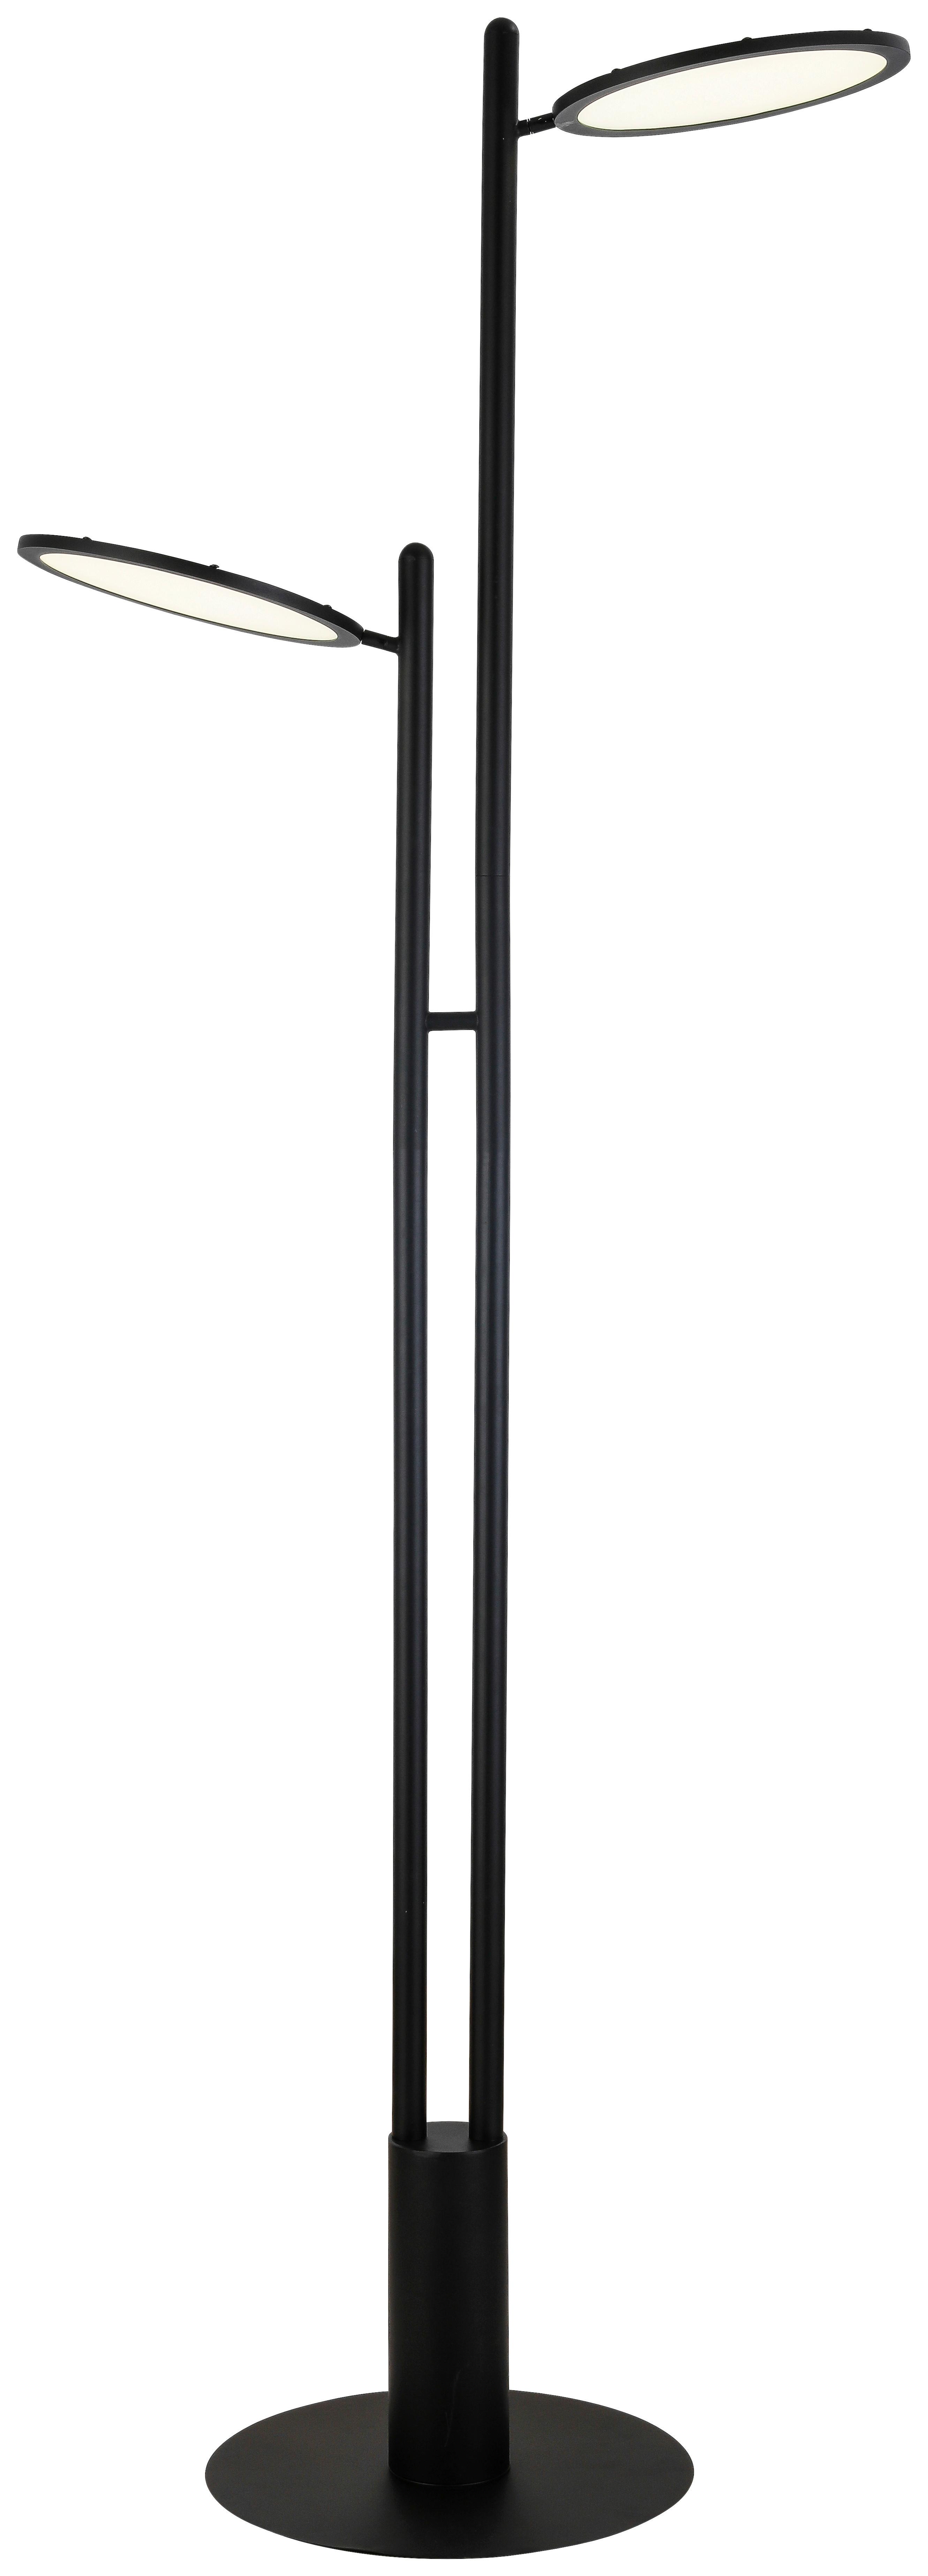 Stojací Led Svítidlo Carsten,30w,4200 Lumen - černá, Moderní, kov/plast (59,4/30/176,7cm) - Visiona